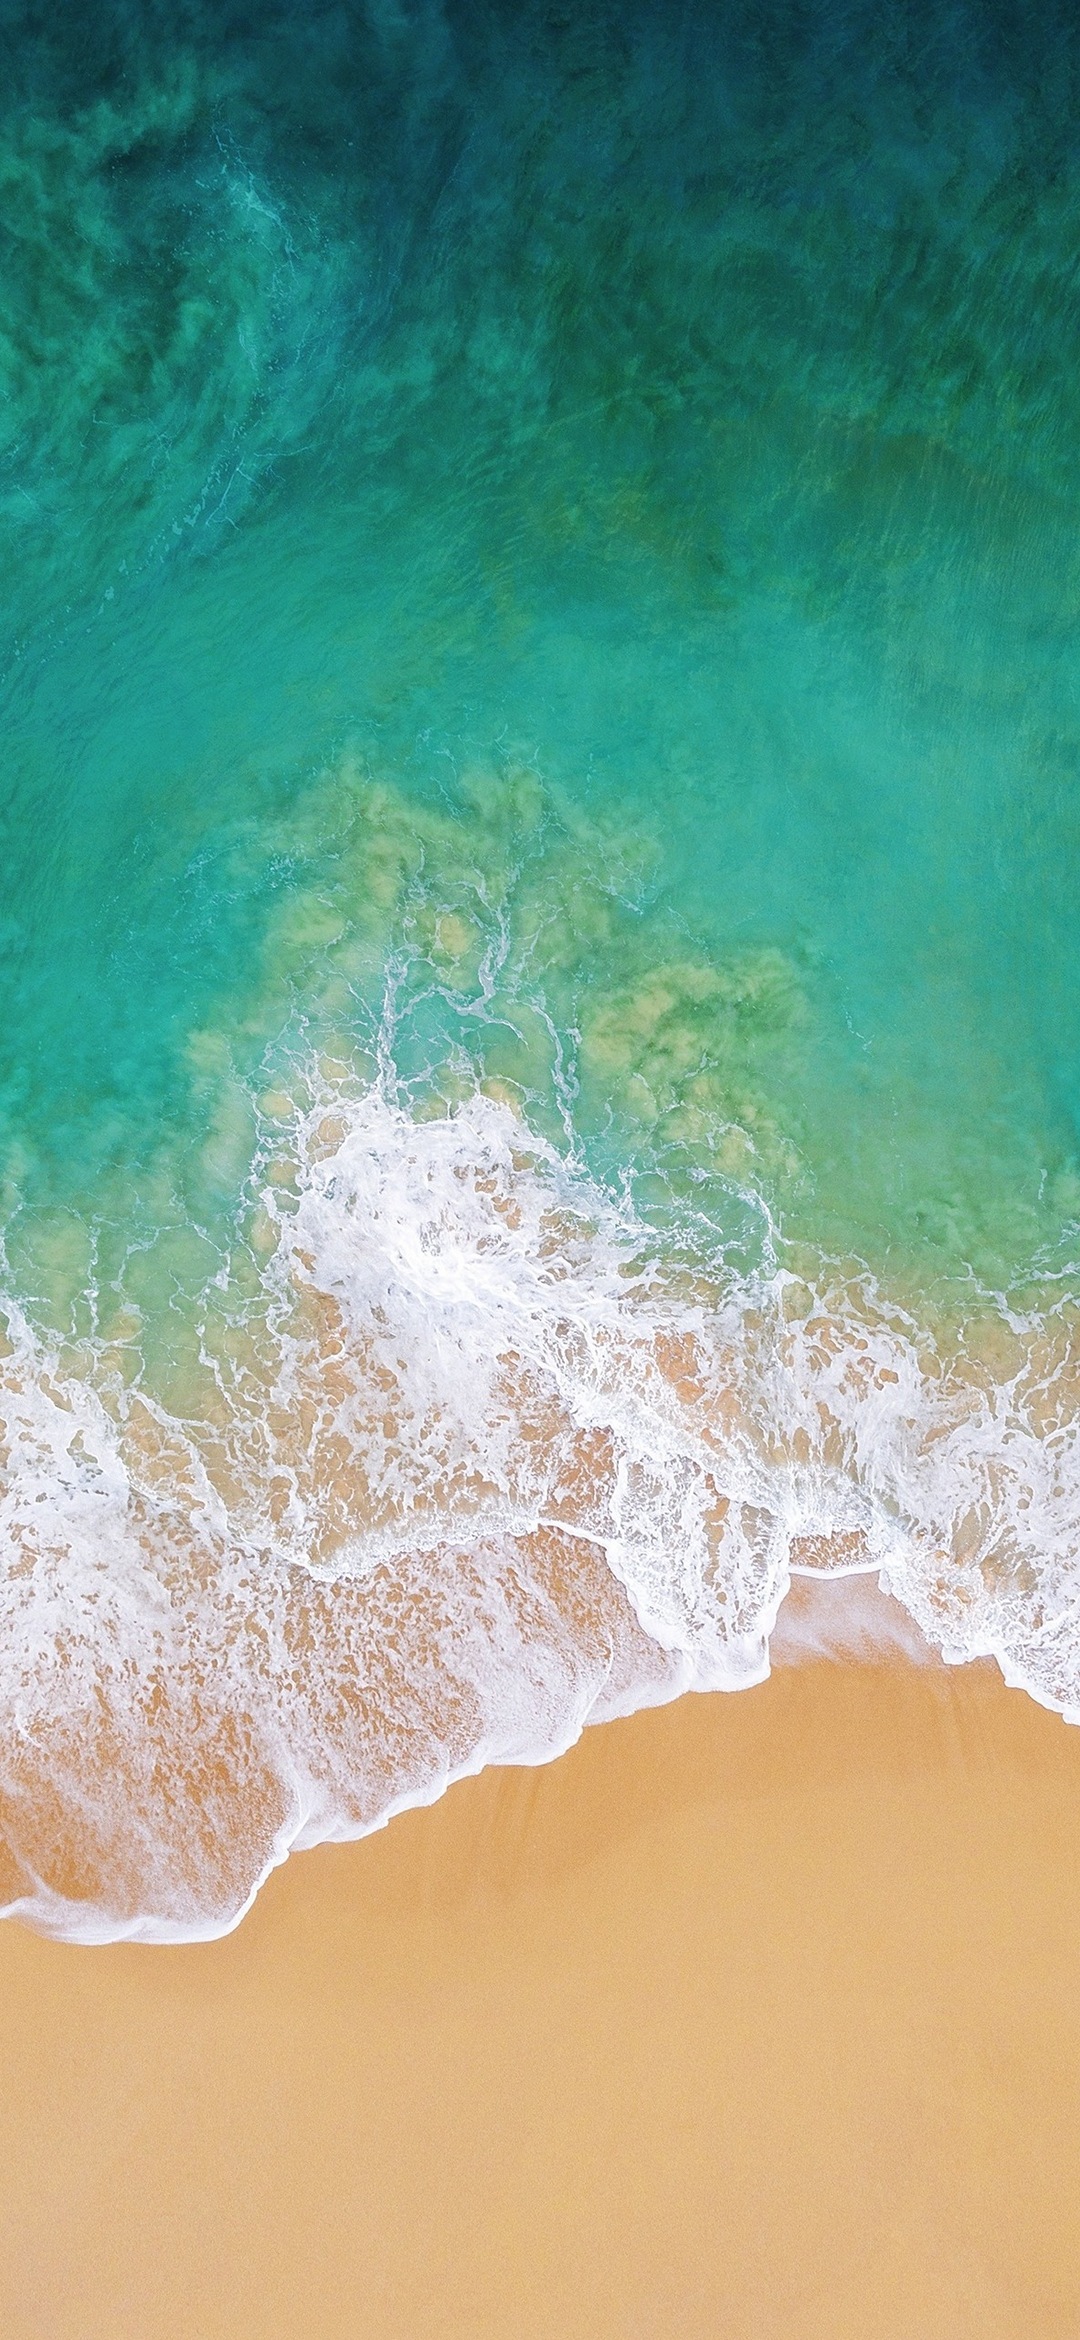 上から見た緑の海と砂浜 Google Pixel 4a Android スマホ壁紙 待ち受け スマラン